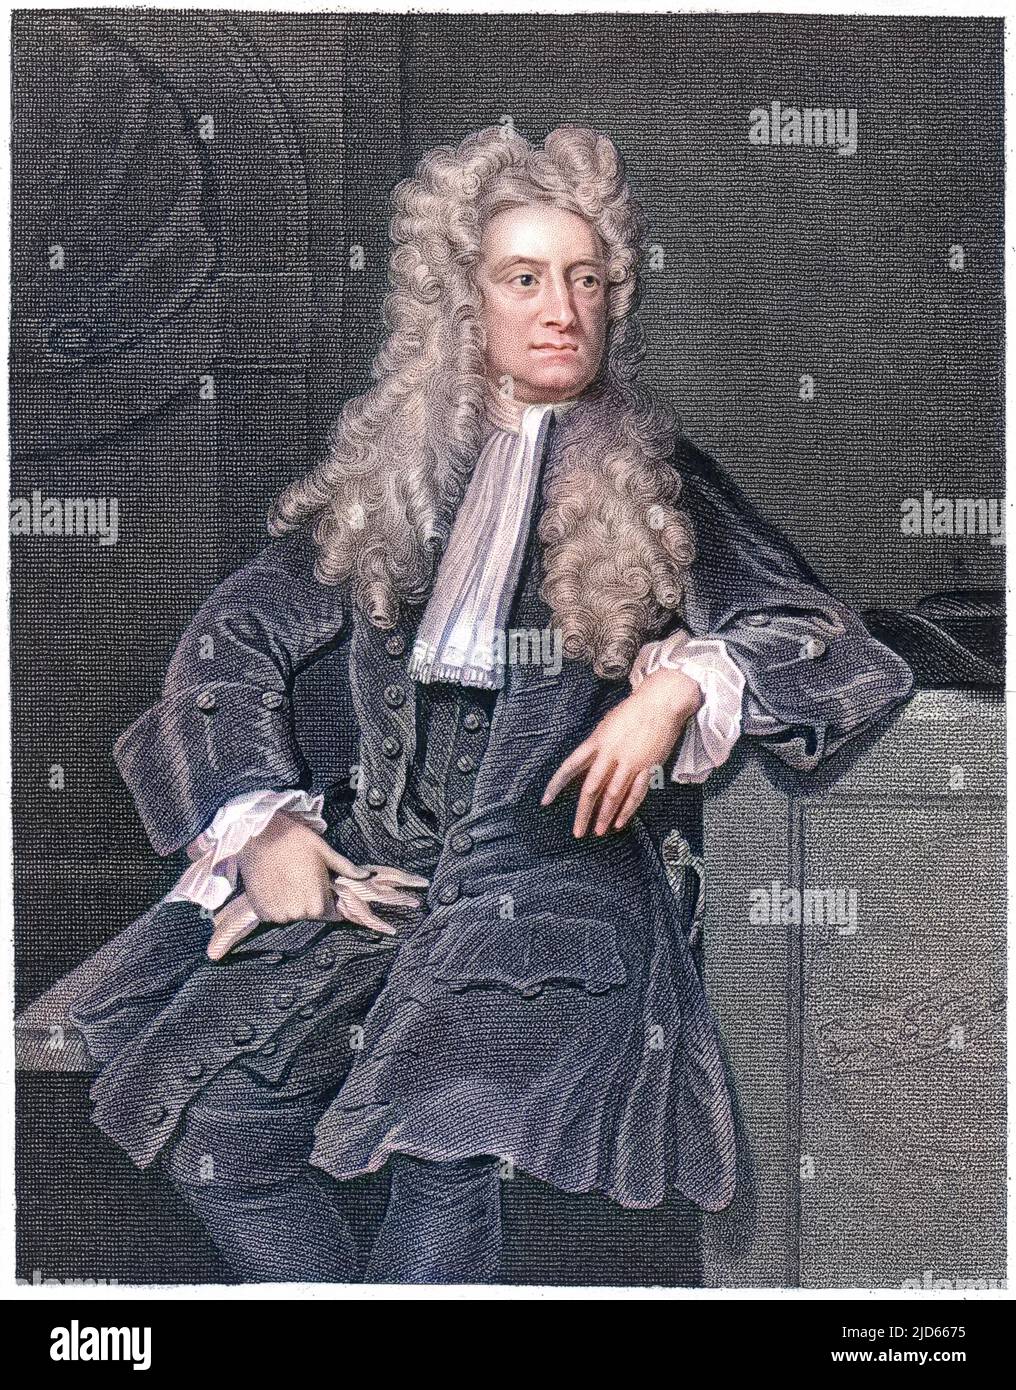 Sir Isaac Newton (1642 - 1727), englischer Mathematiker, Physiker, Astronom, Naturphilosoph, Alchemist, Theologe und Okkultist. Kolorierte Version von : 10005732 Datum: 1690s Stockfoto